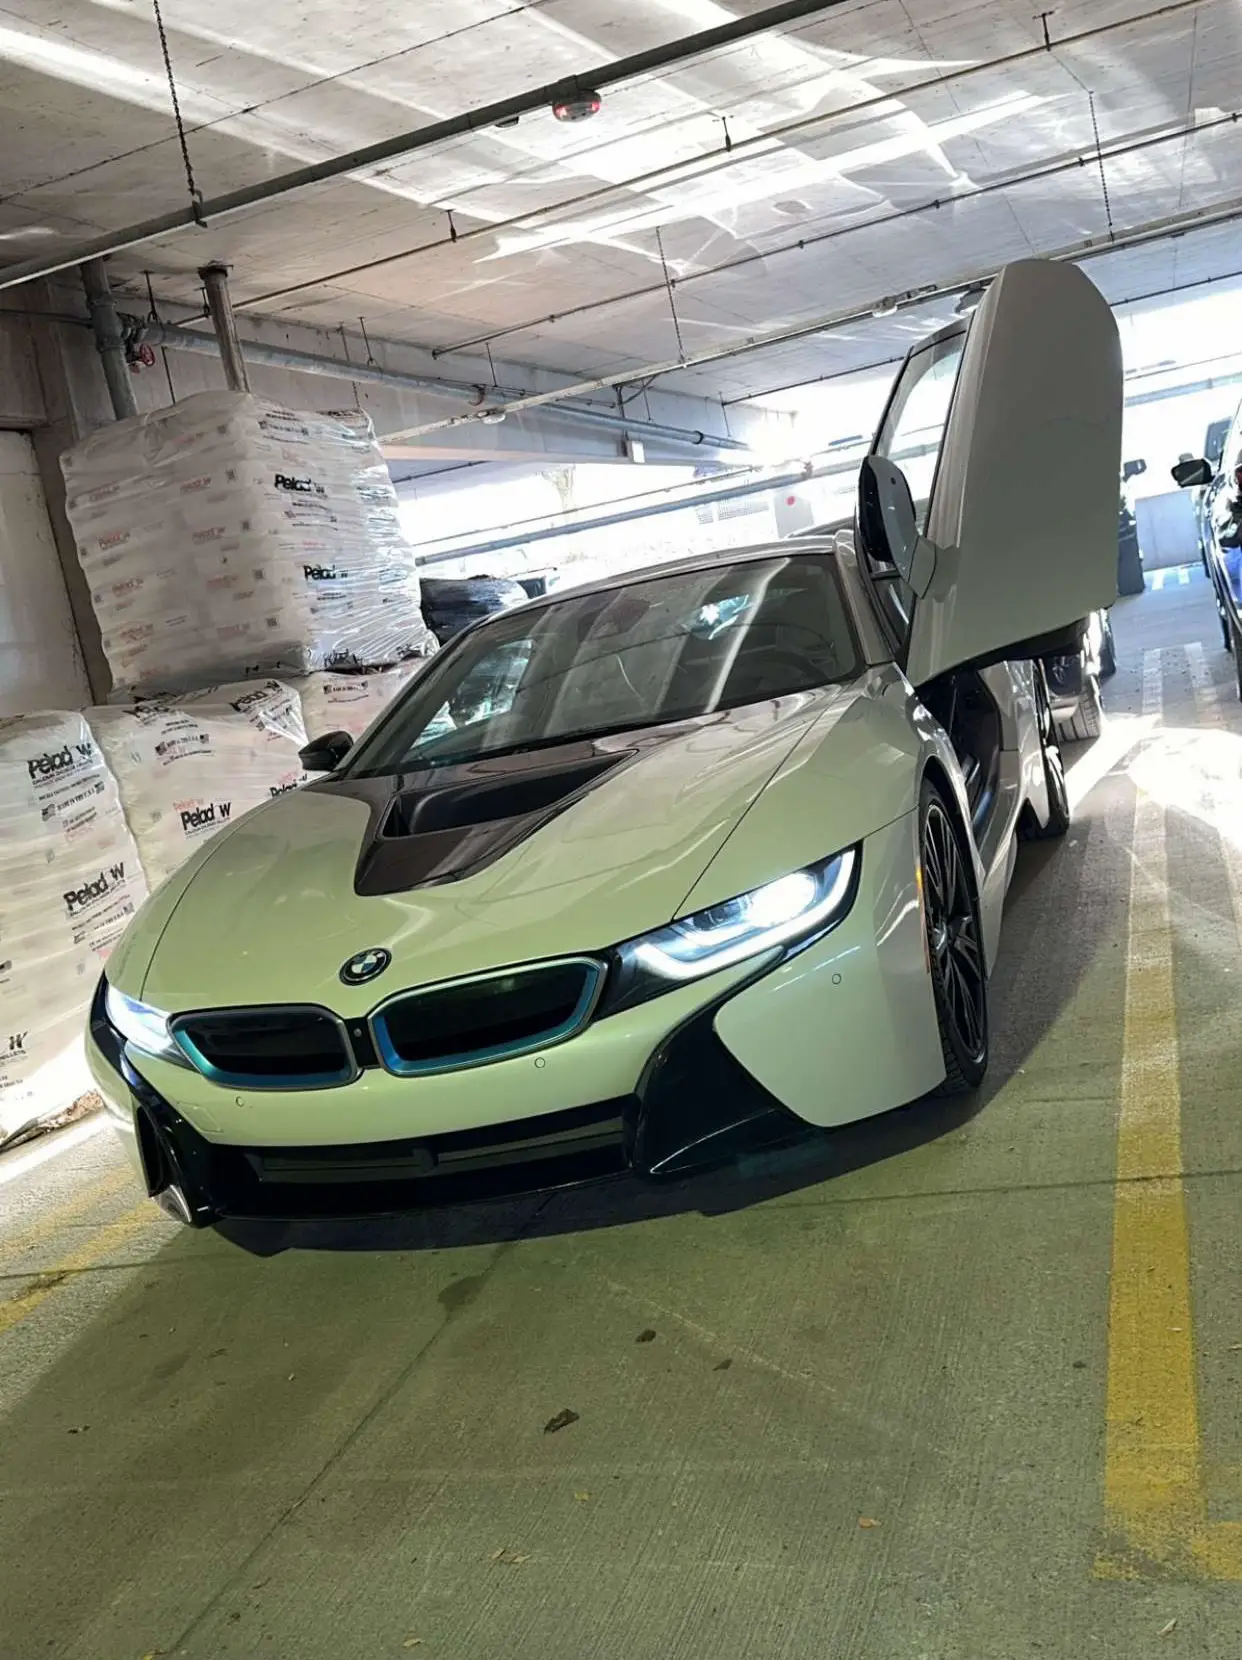 Neon Green BMW i8  Hybrid Sports Car